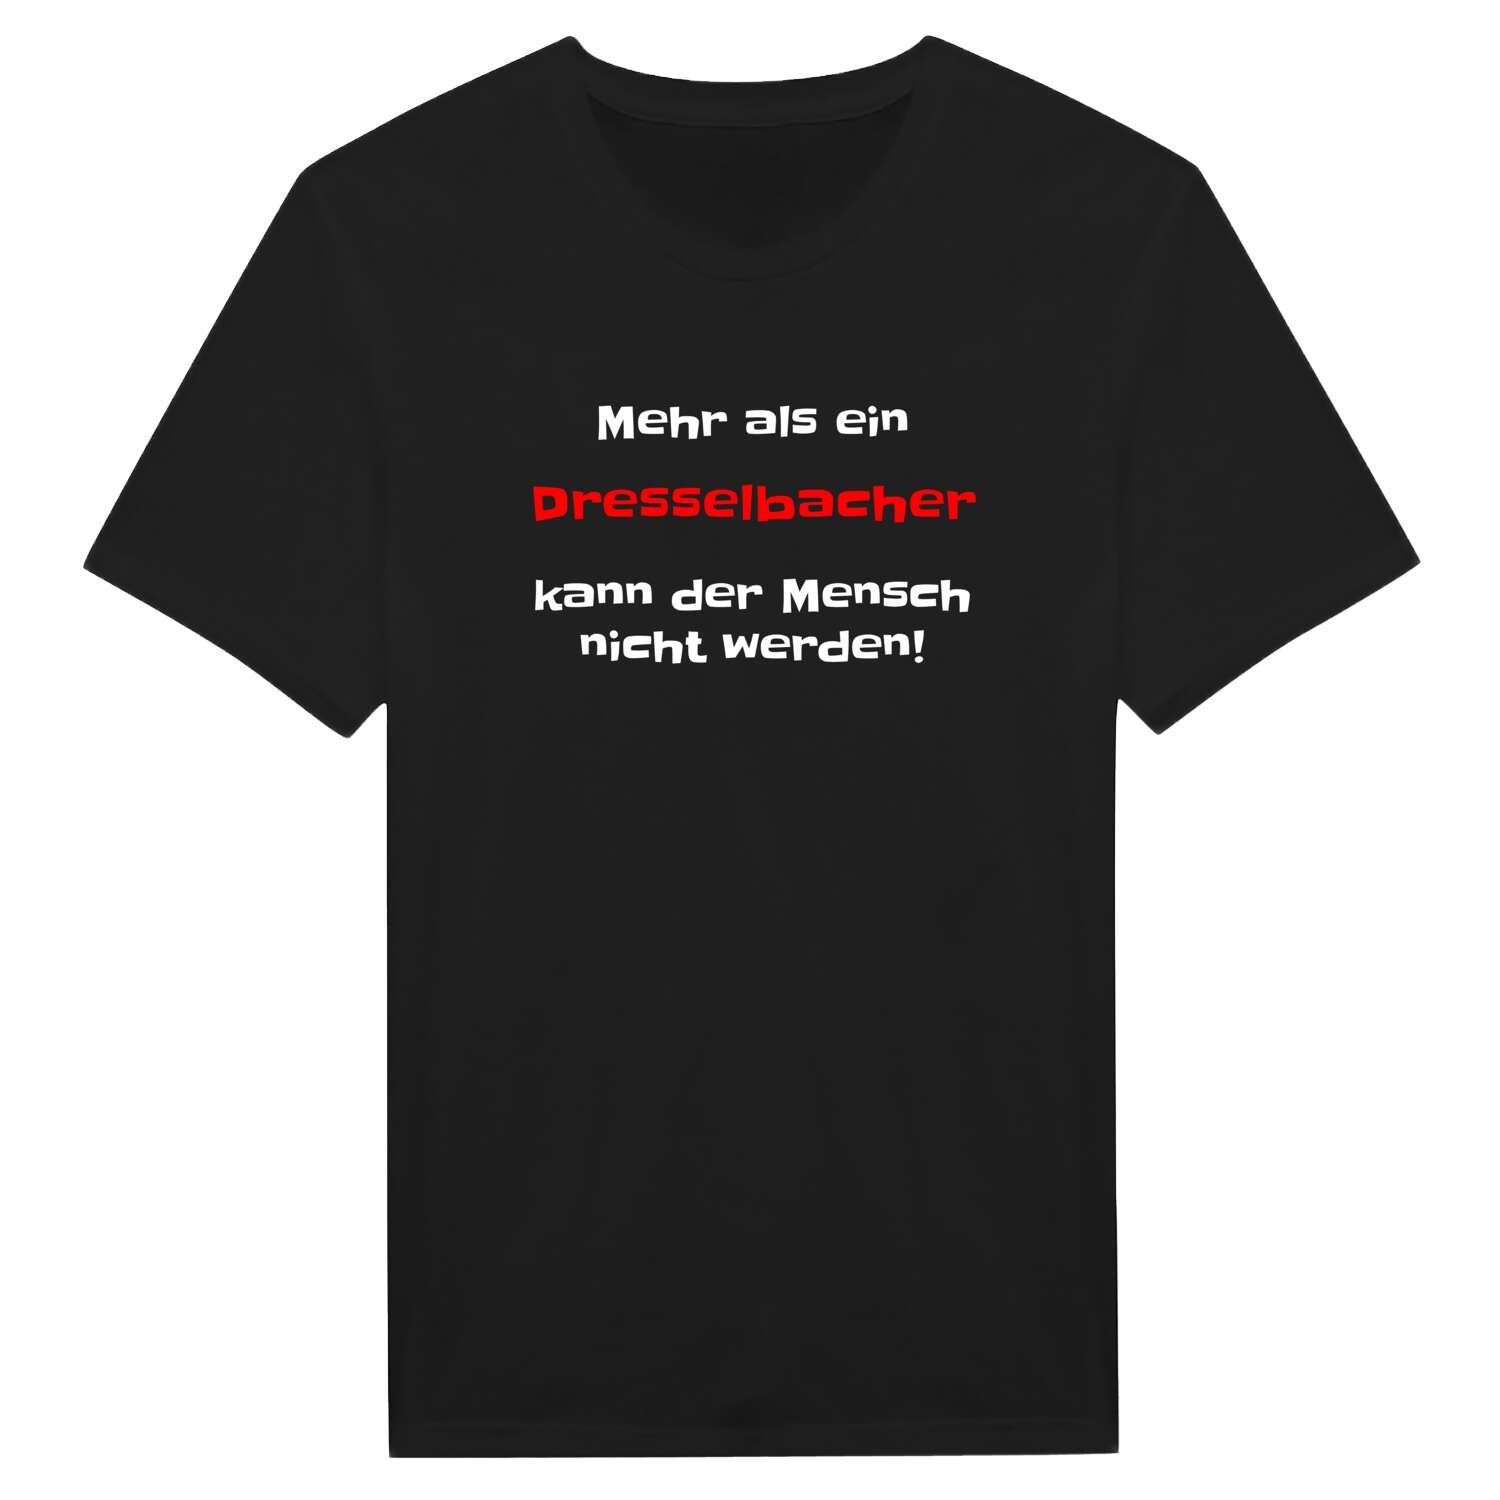 Dresselbach T-Shirt »Mehr als ein«